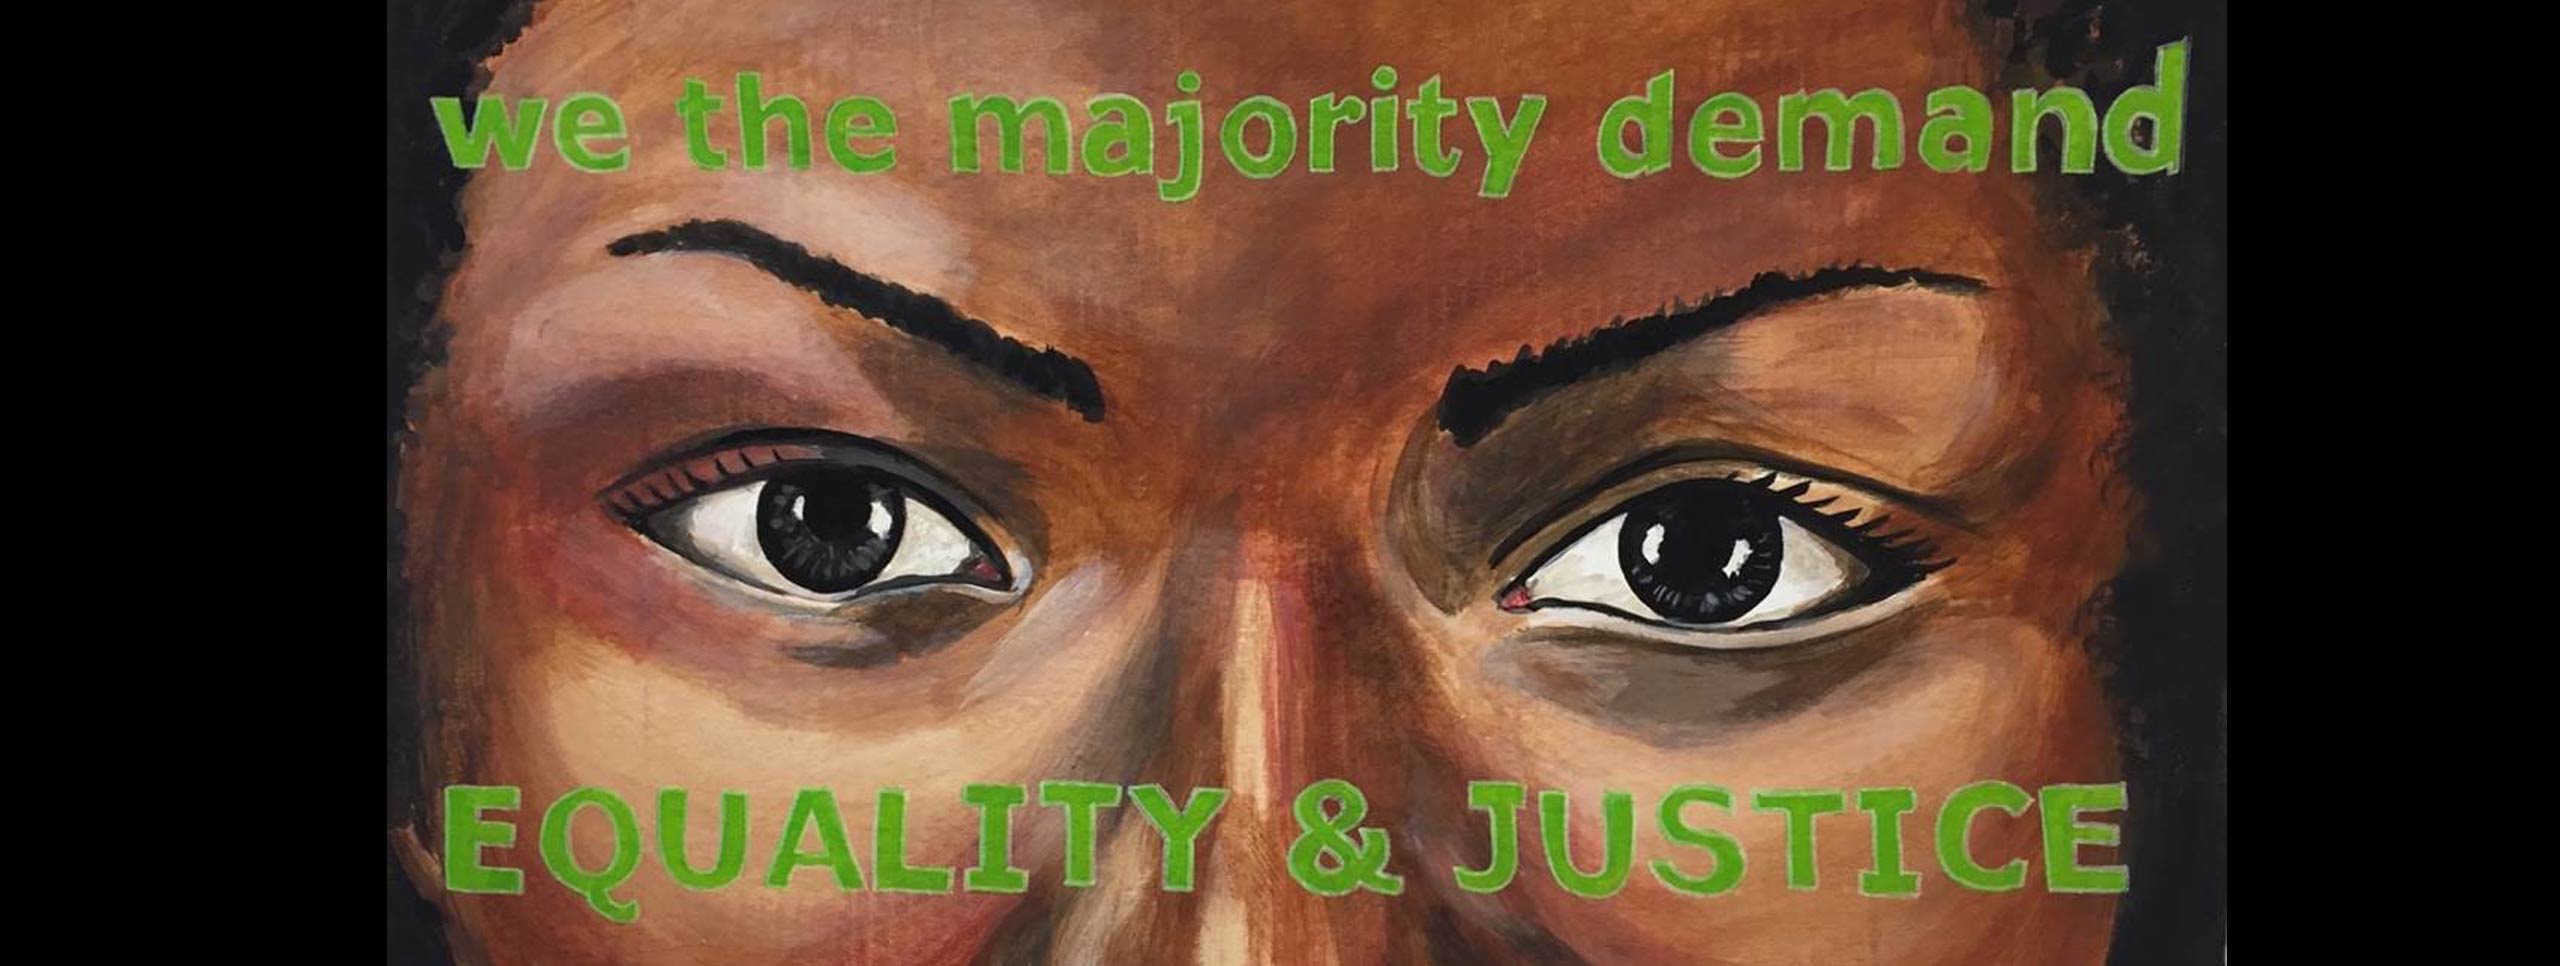 女人的眼睛的绘画。 在她的额头和脸颊上绘有“我们大多数要求/平等与公正”的字眼